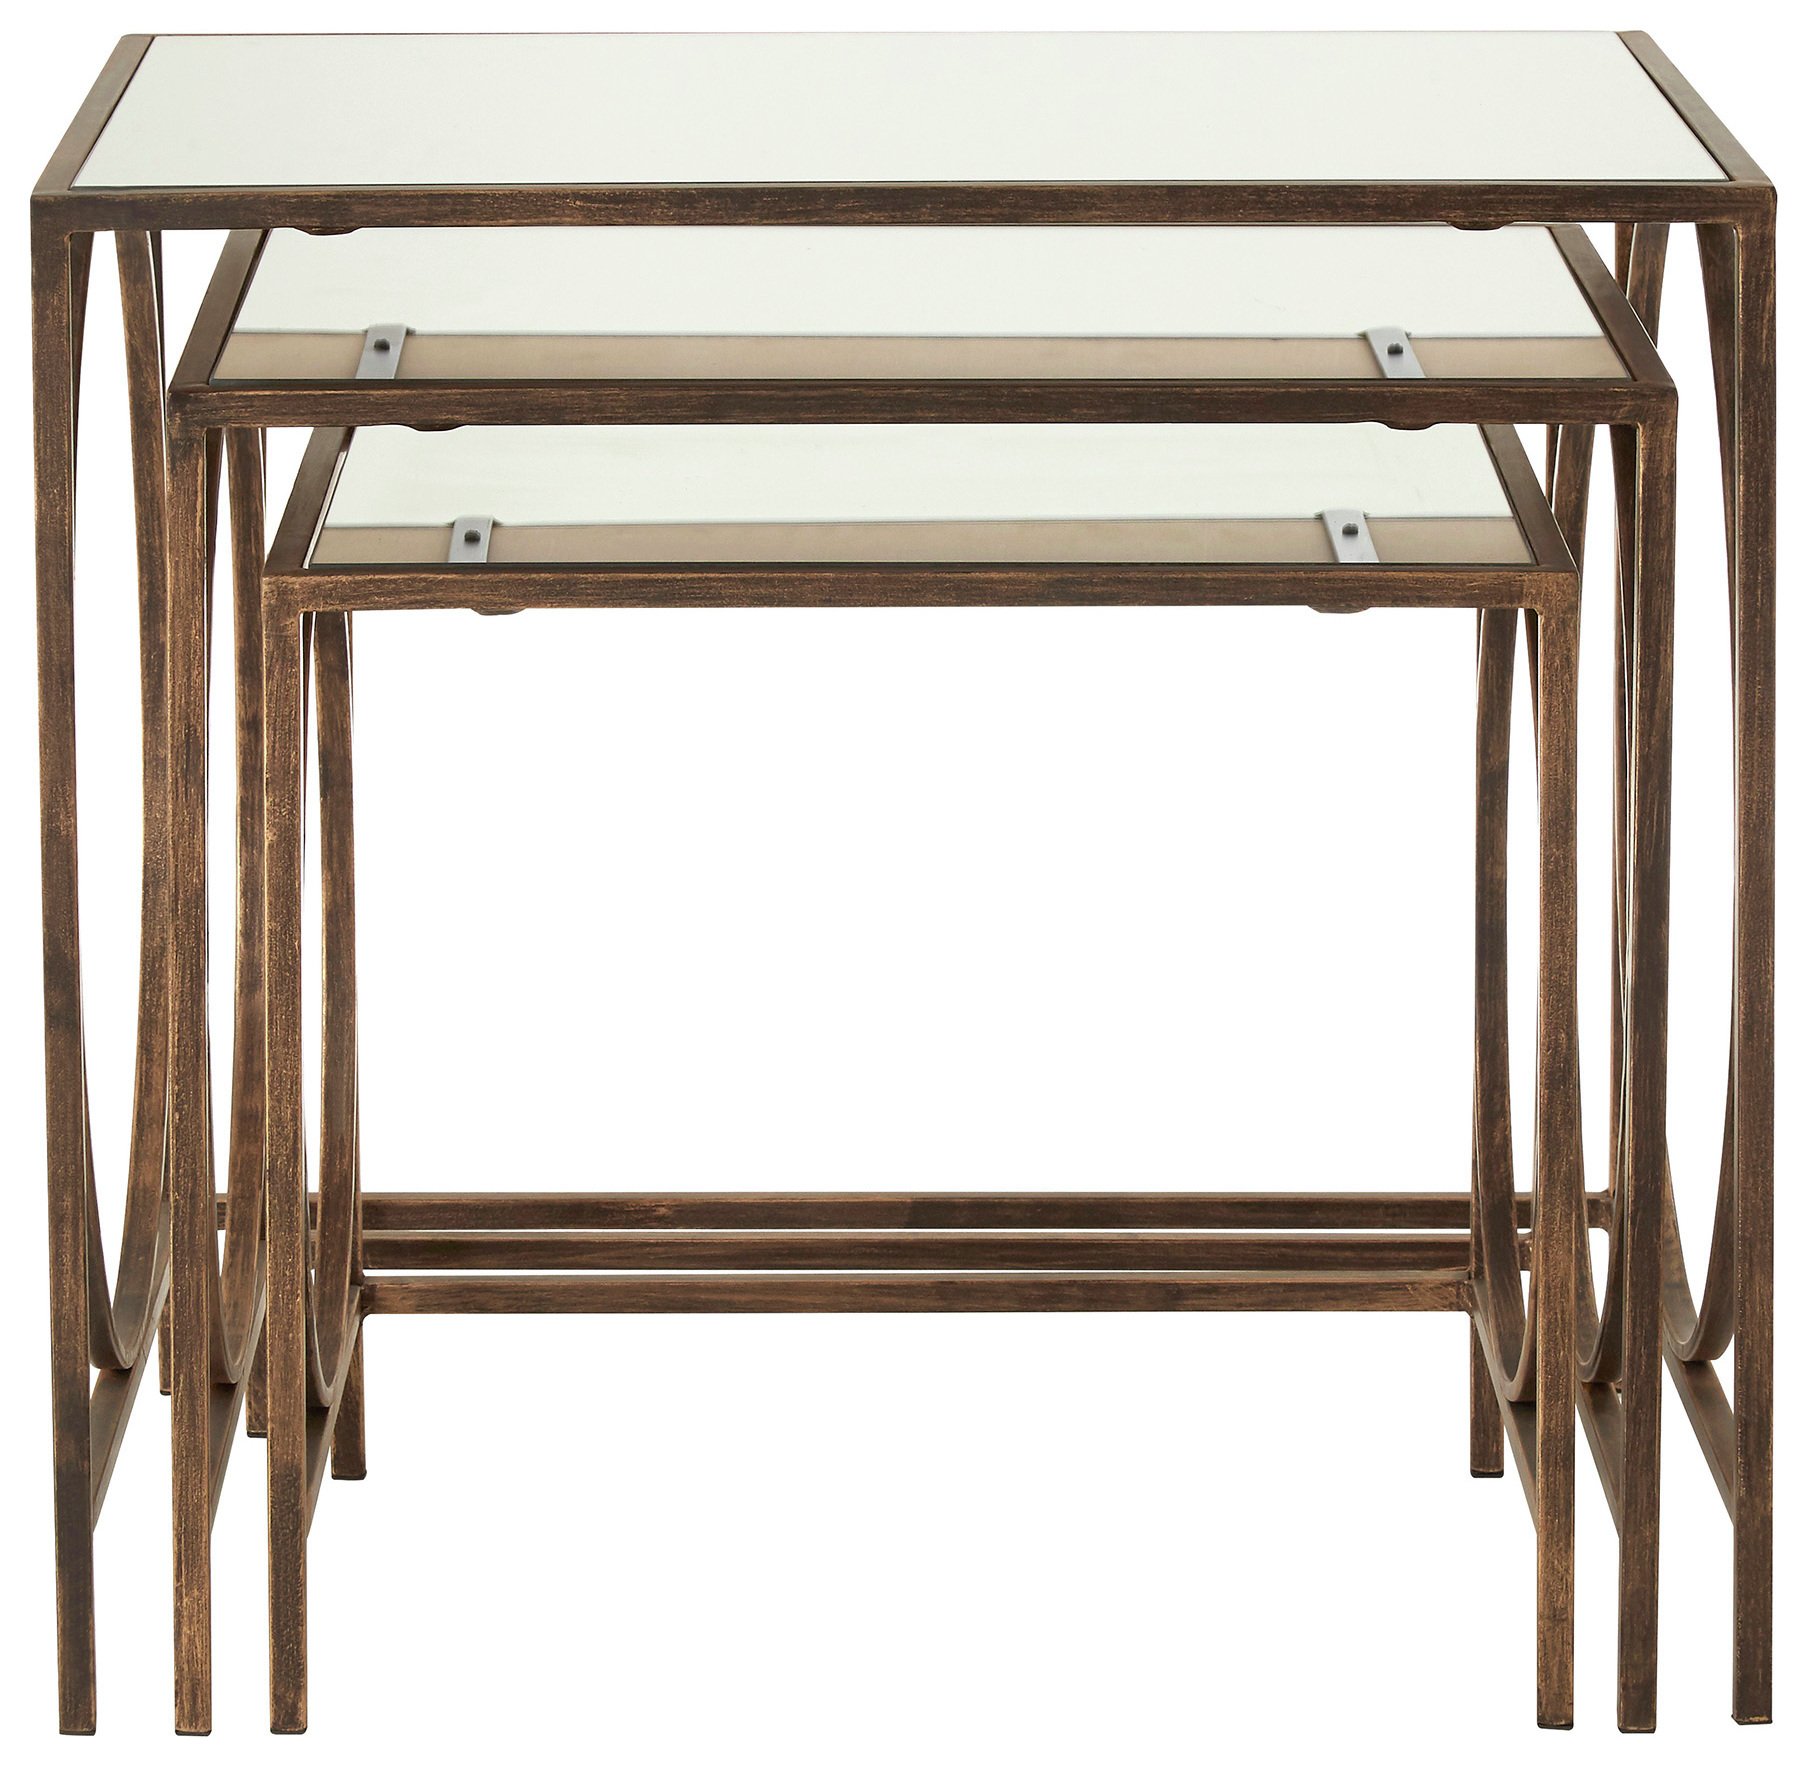 Premier Housewares Avantis Nest of 3 Tables - Bronze Frame